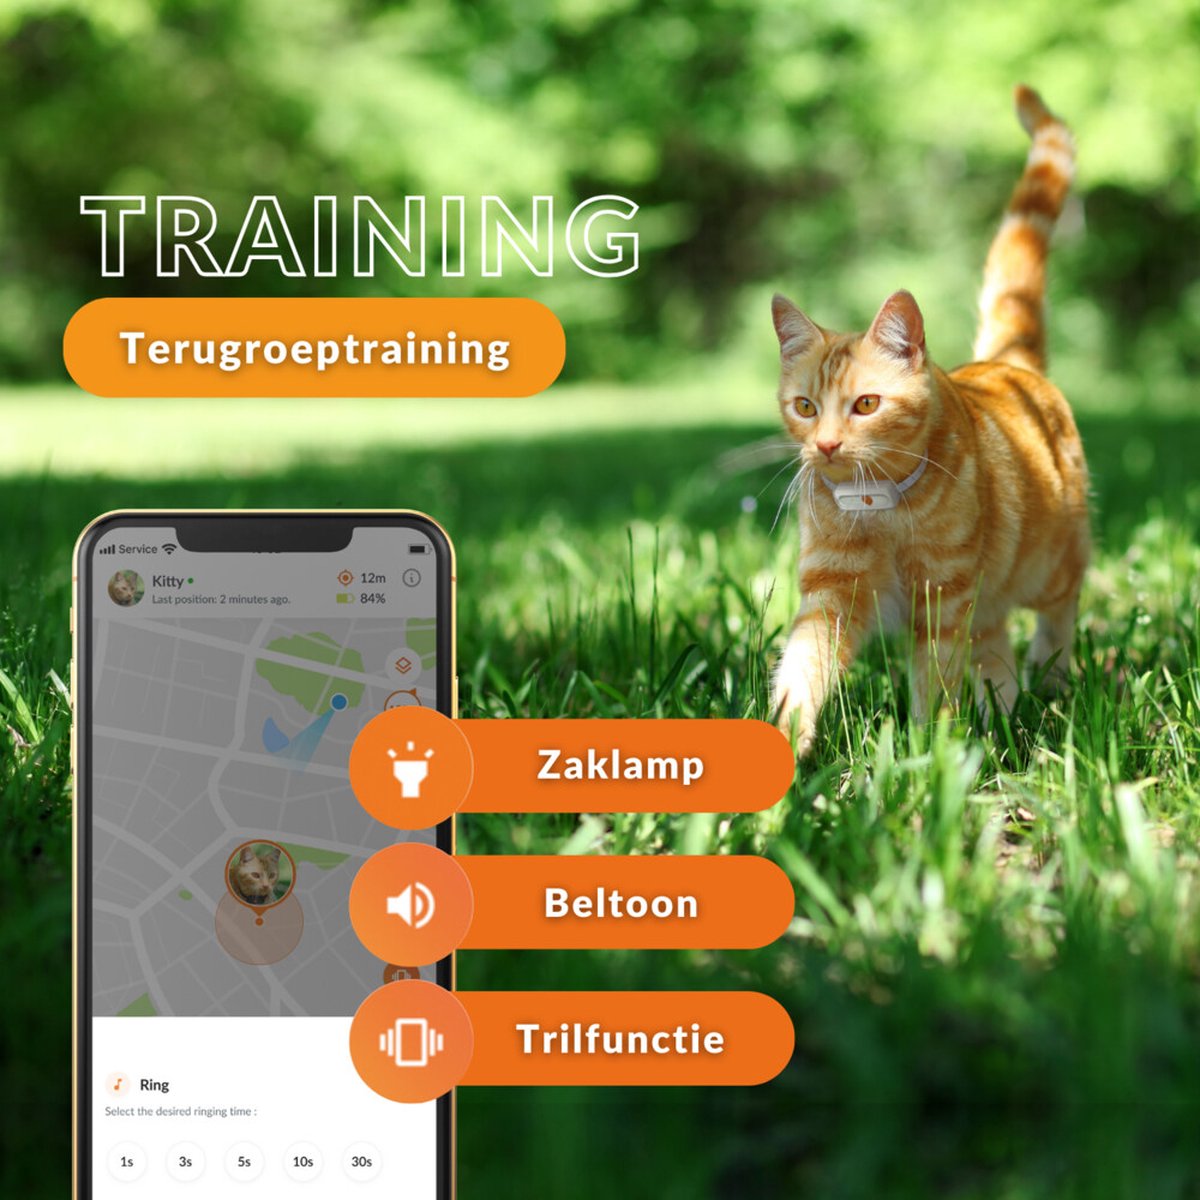 Localizador GPS para gatos Weenect Cats²